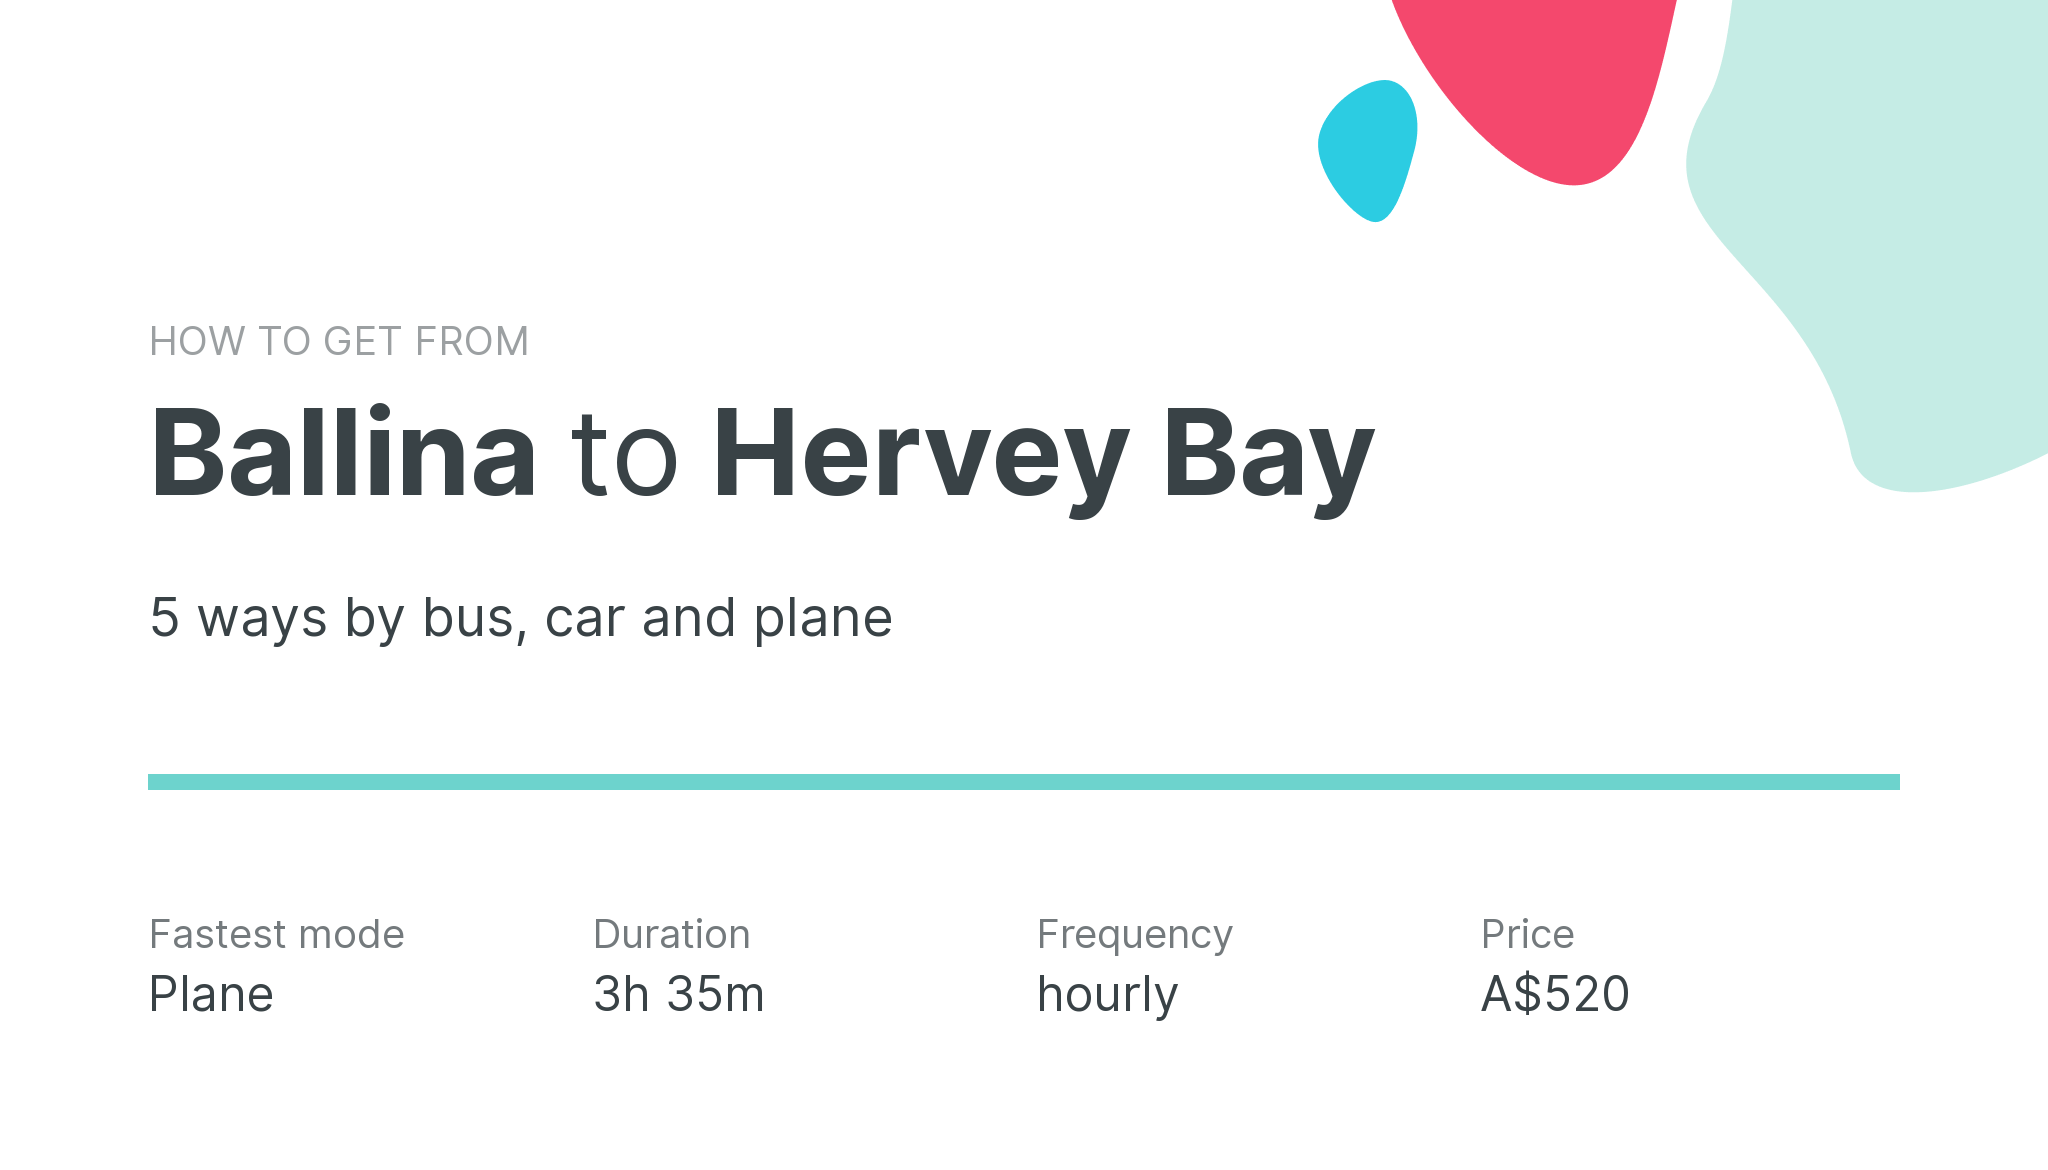 How do I get from Ballina to Hervey Bay